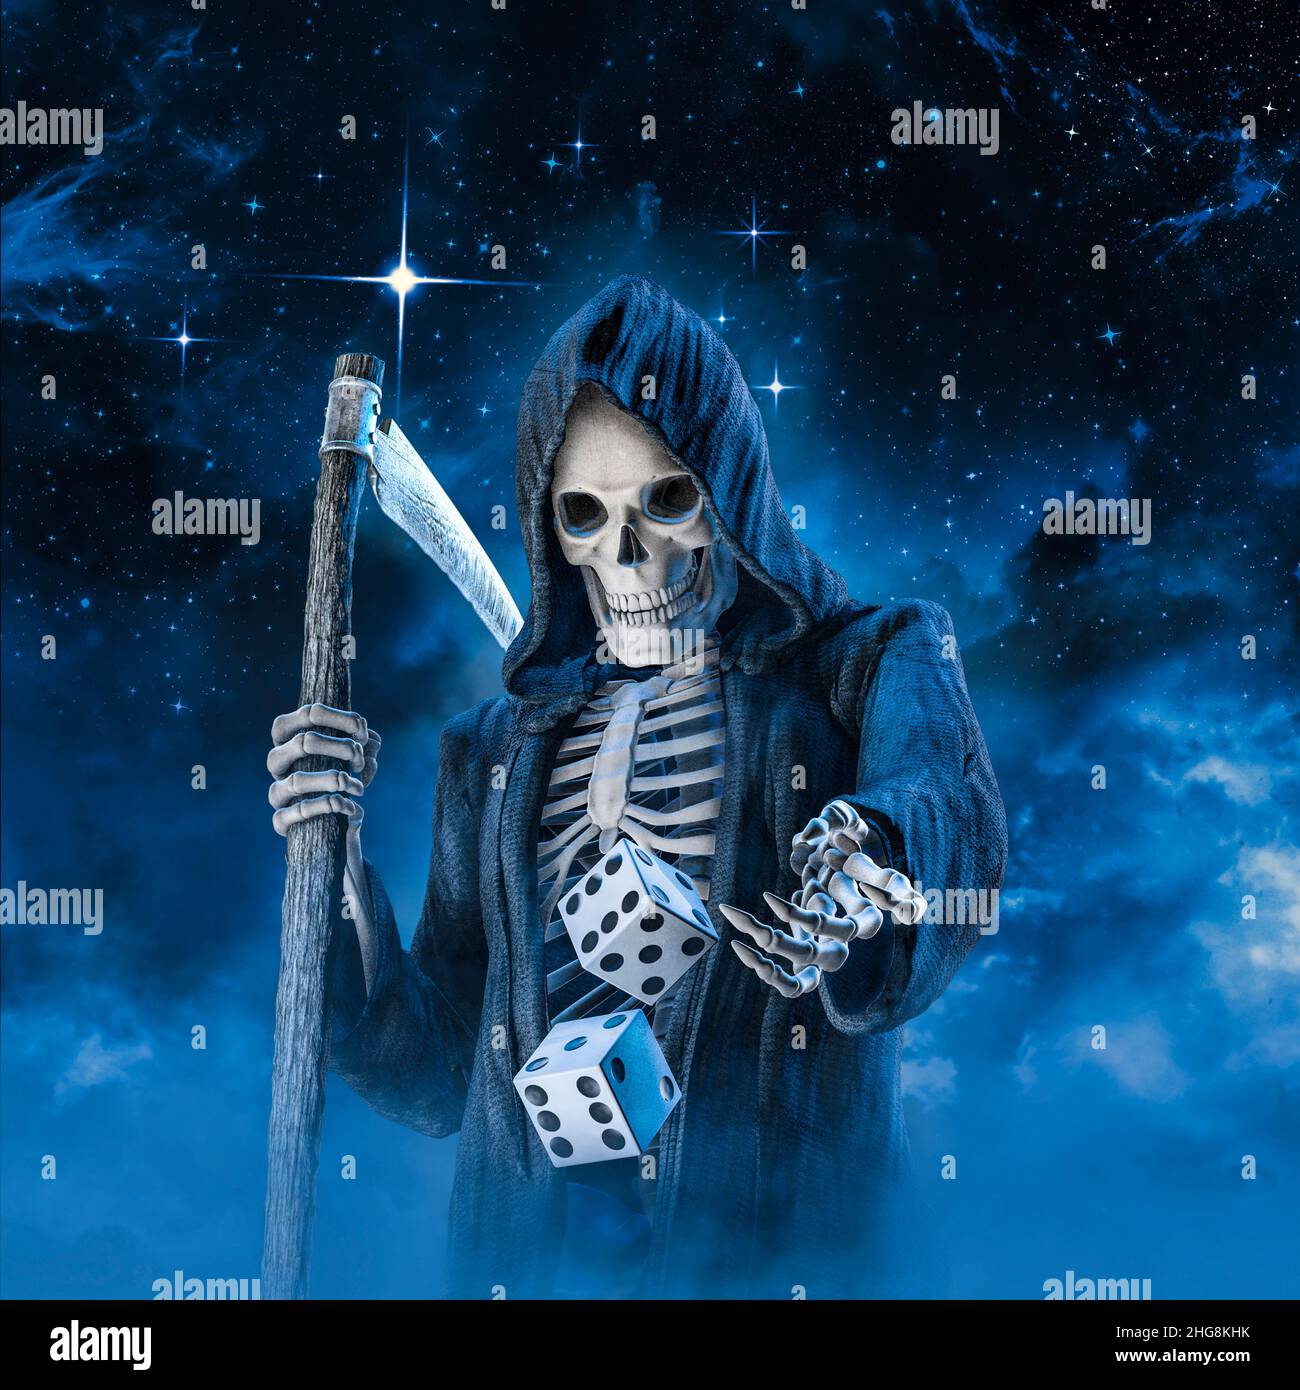 La mort lance des dés - 3D illustration de sinistre couche avec scythe jouant un jeu magique de chance contre ciel étoilé de nuit Banque D'Images